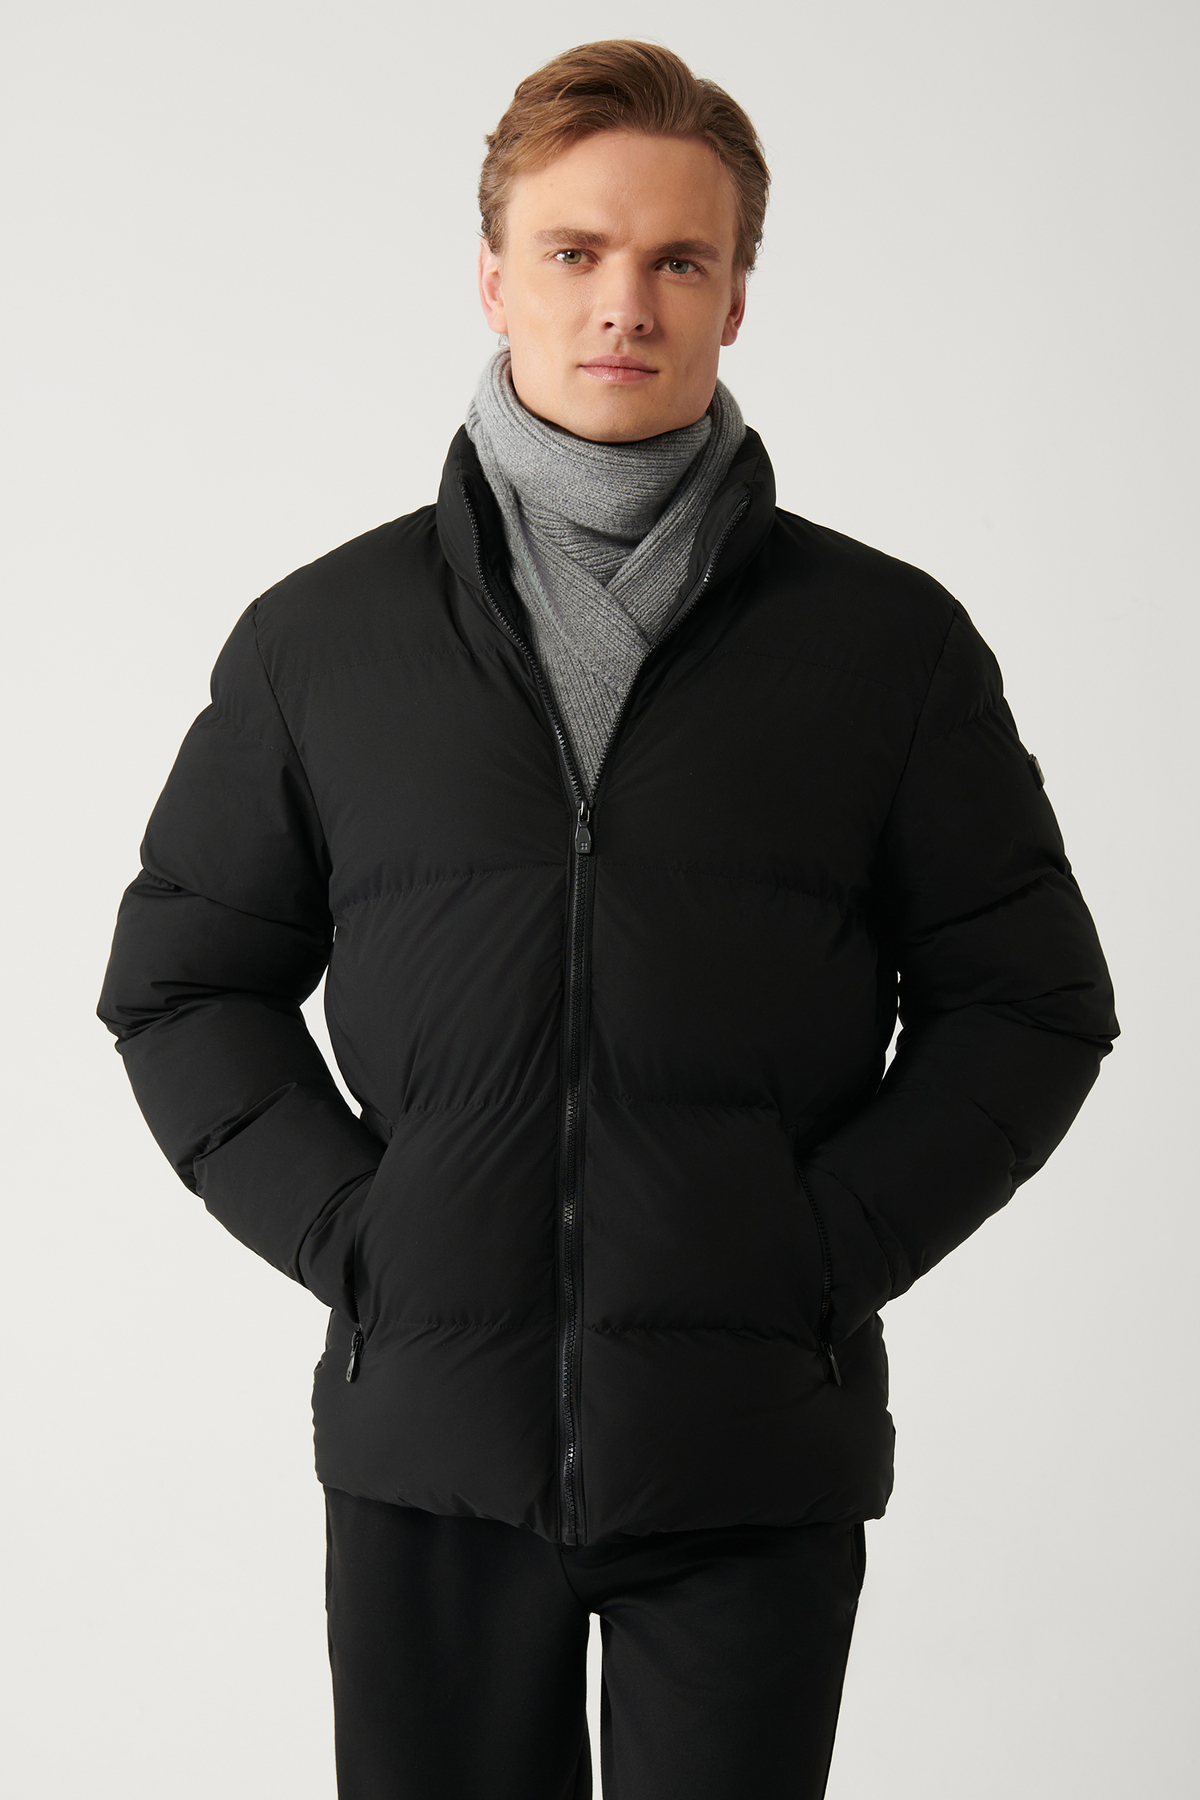 Levně Avva Men's Black Puffer Jacket Stand Collar Water Repellent Windproof Quilted Comfort Fit